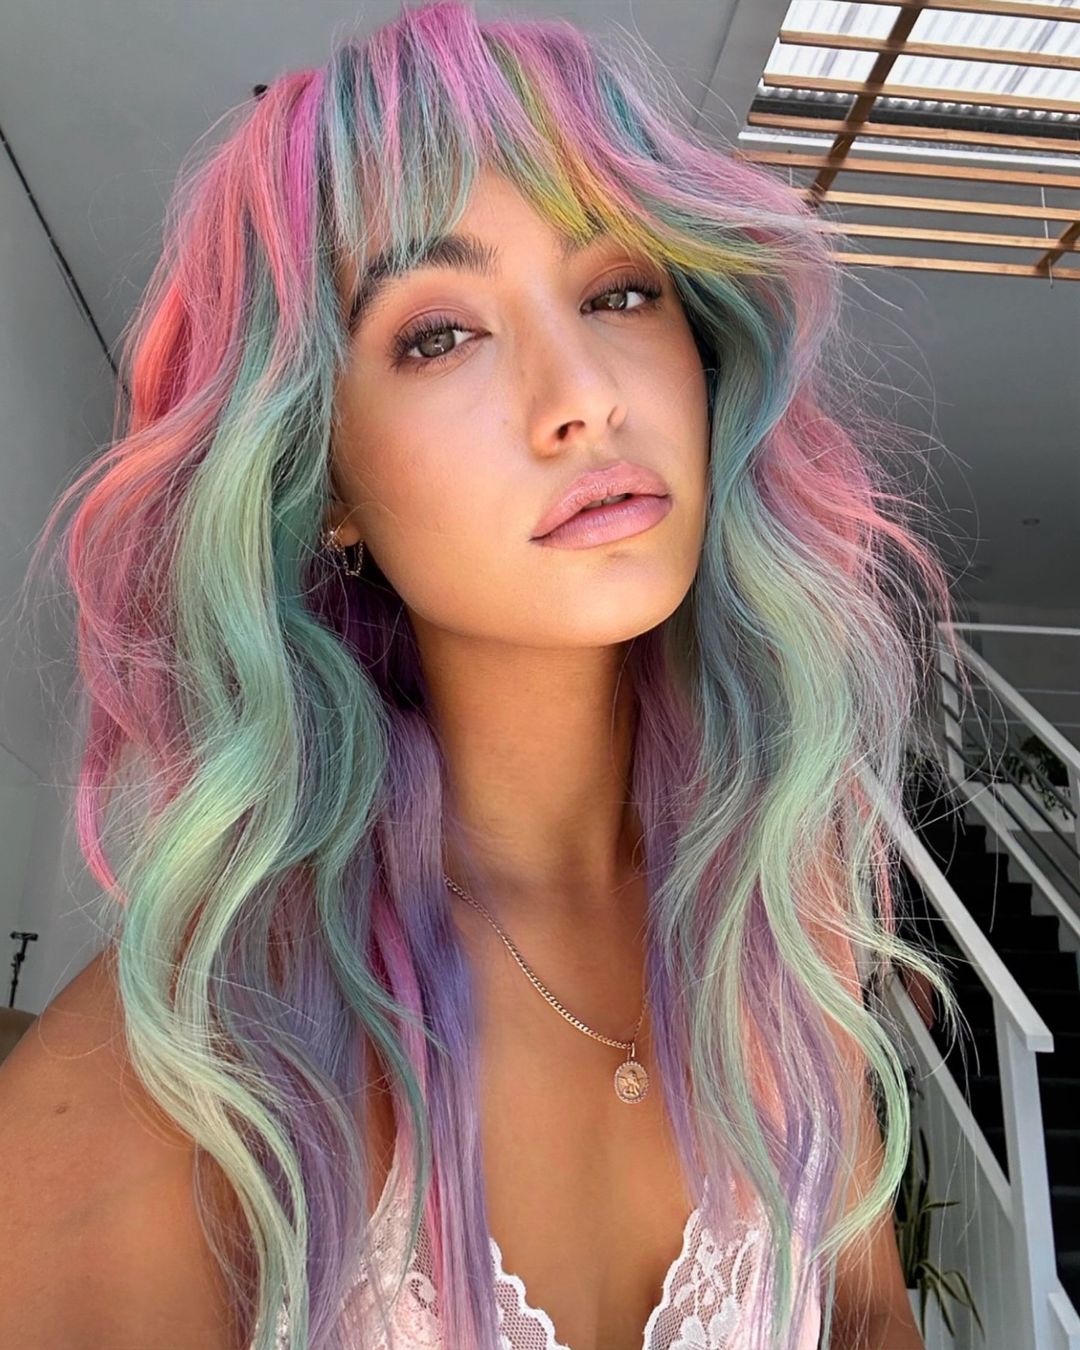 cabelo arco-íris com franja cortina